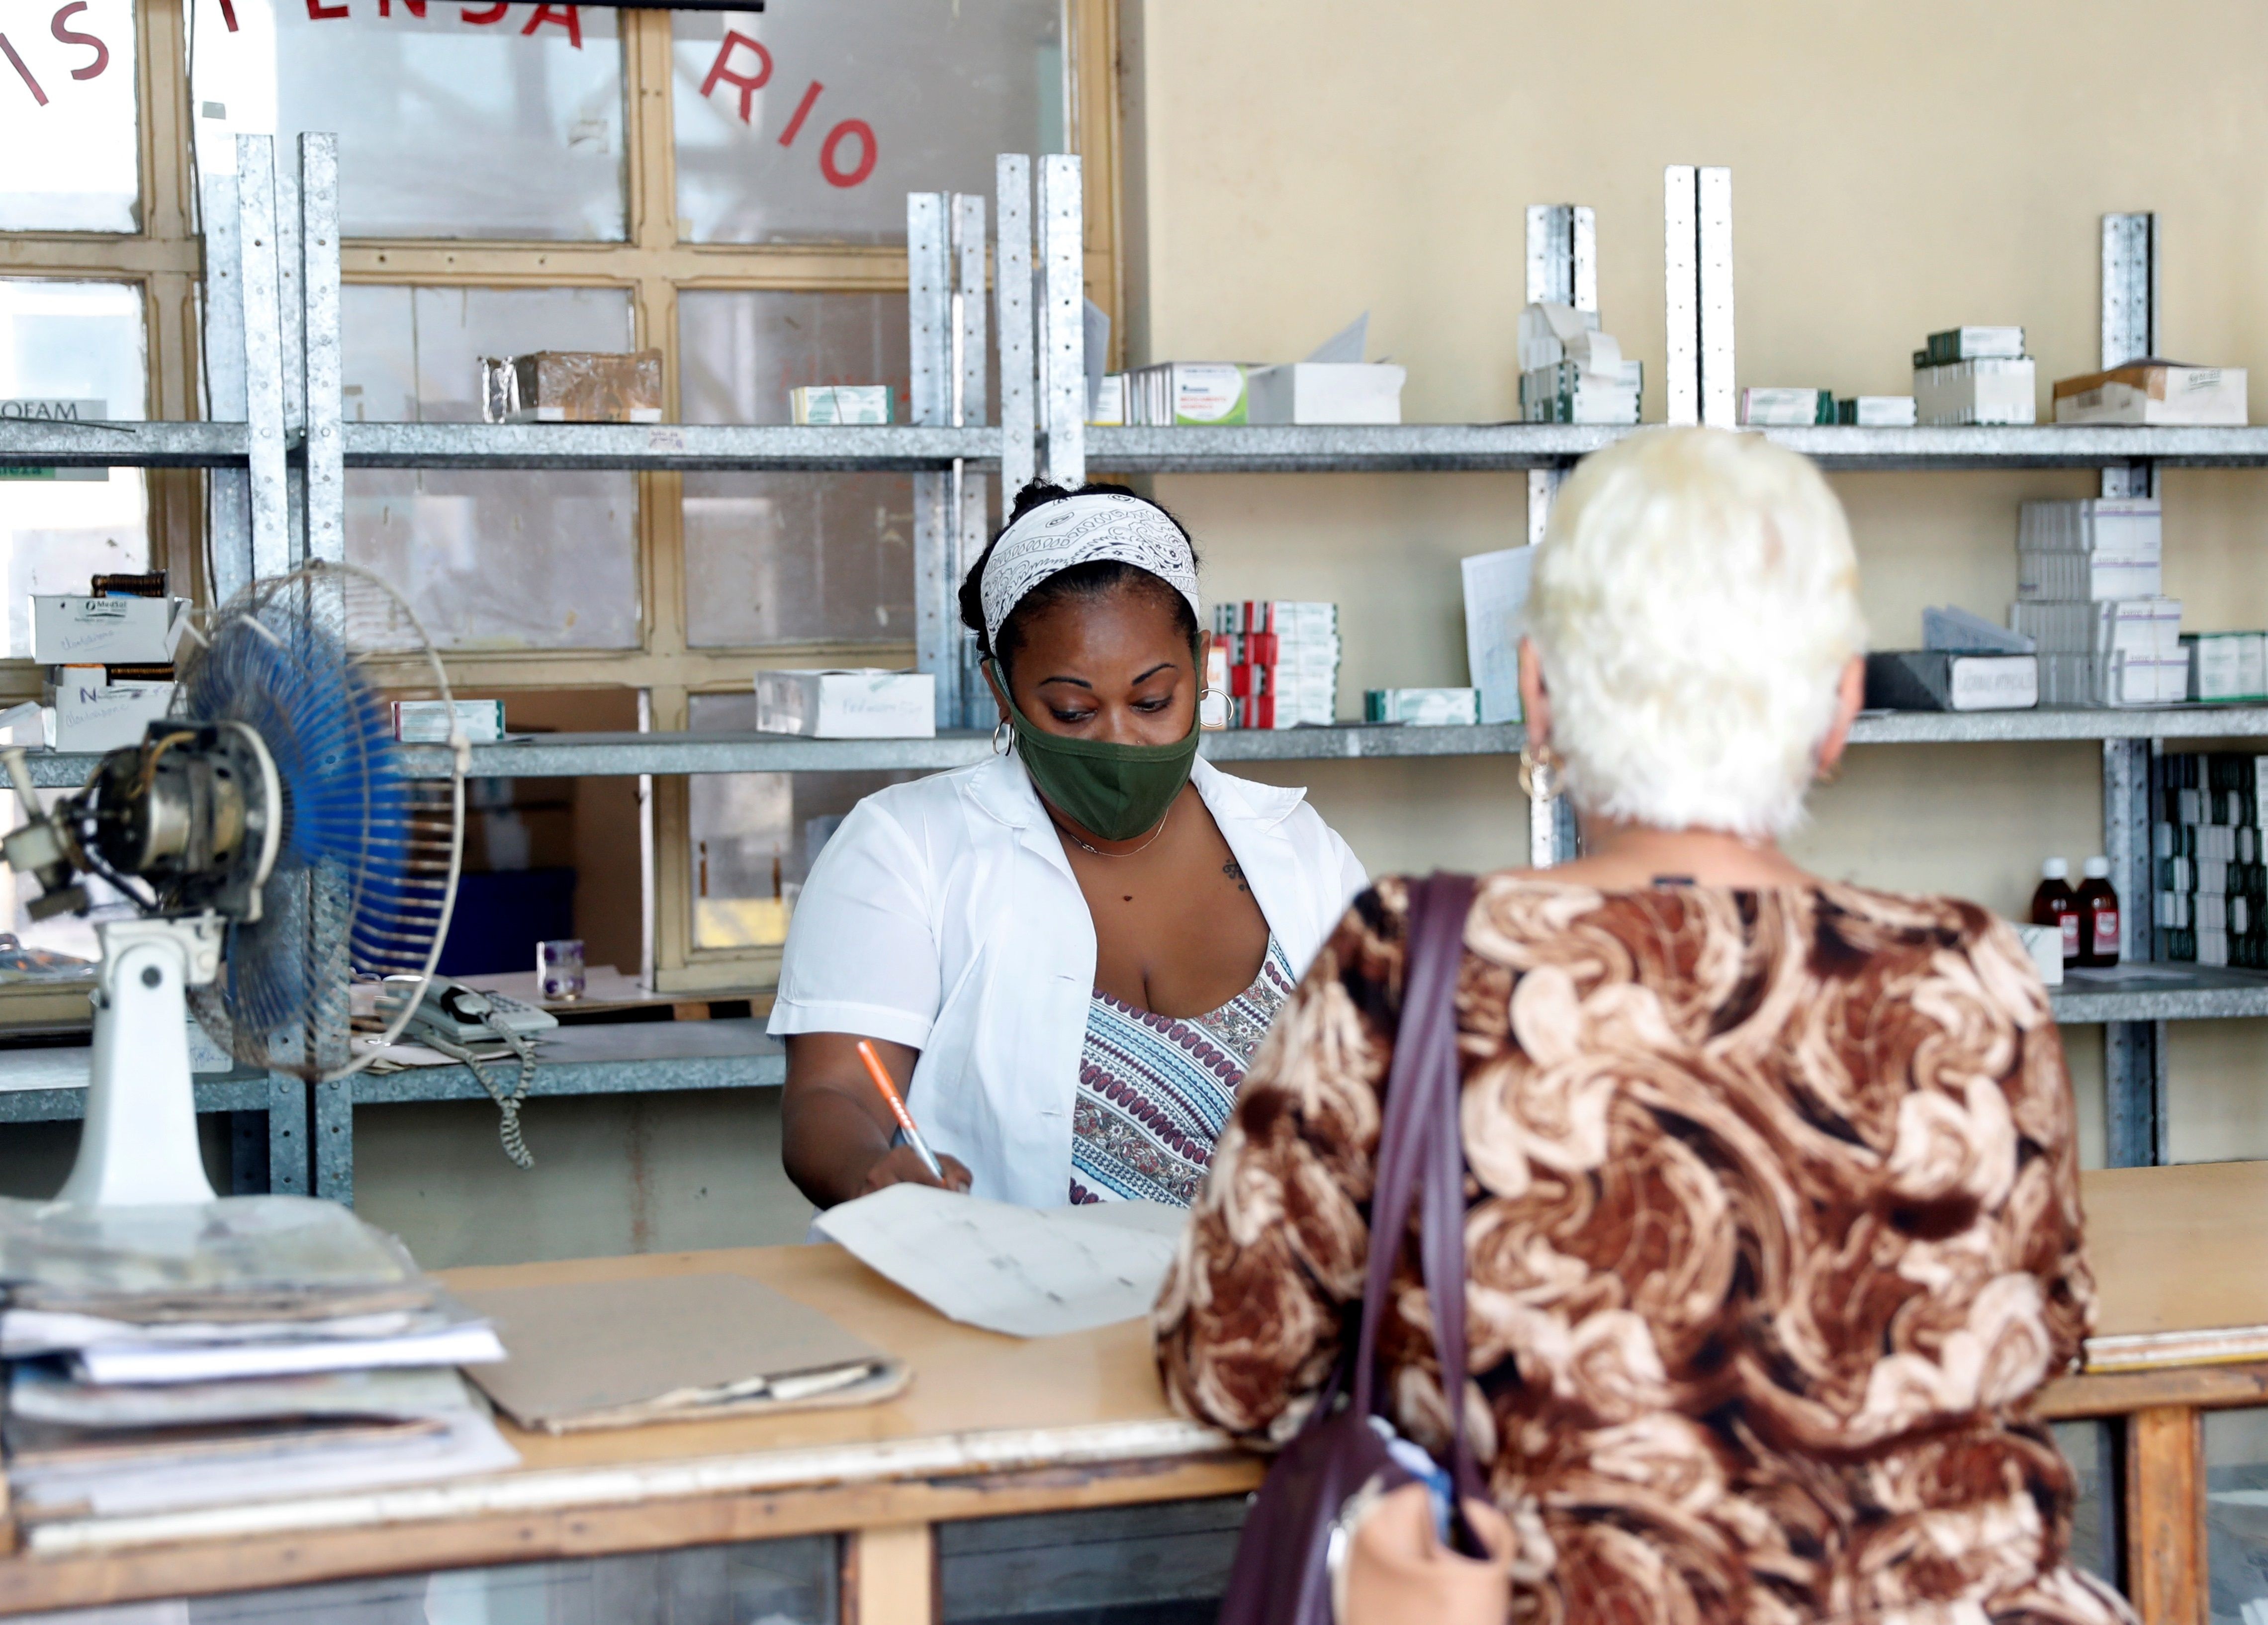 Una mujer fue registrada al comprar medicamentos, en una farmacia poco abastecida, en La Habana (Cuba) (EFE/Yander Zamora)